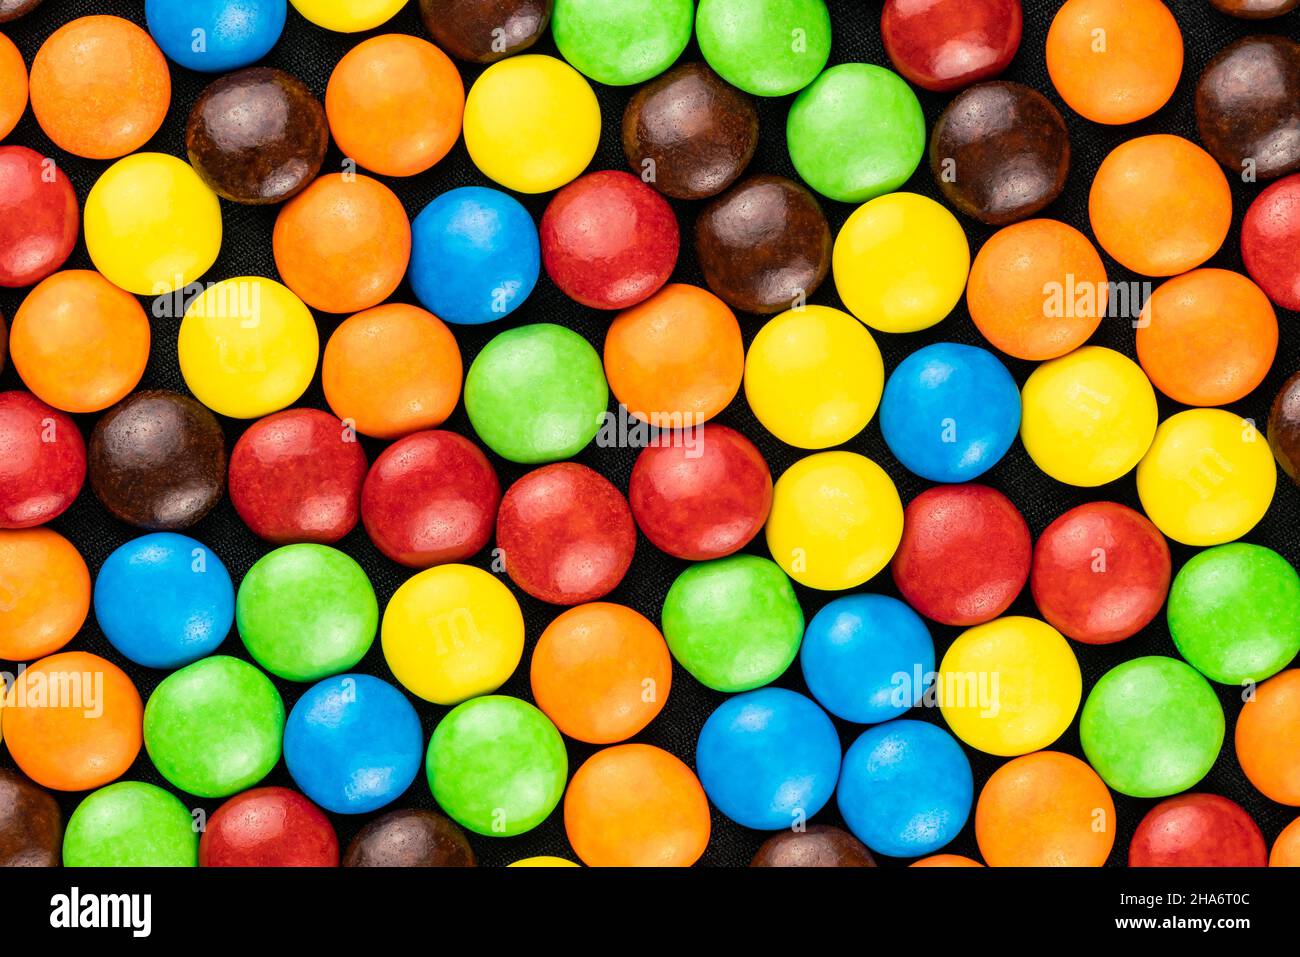 Vue de dessus de grains de chocolat multicolores sur fond noir.Pilules sucrées au chocolat. Banque D'Images